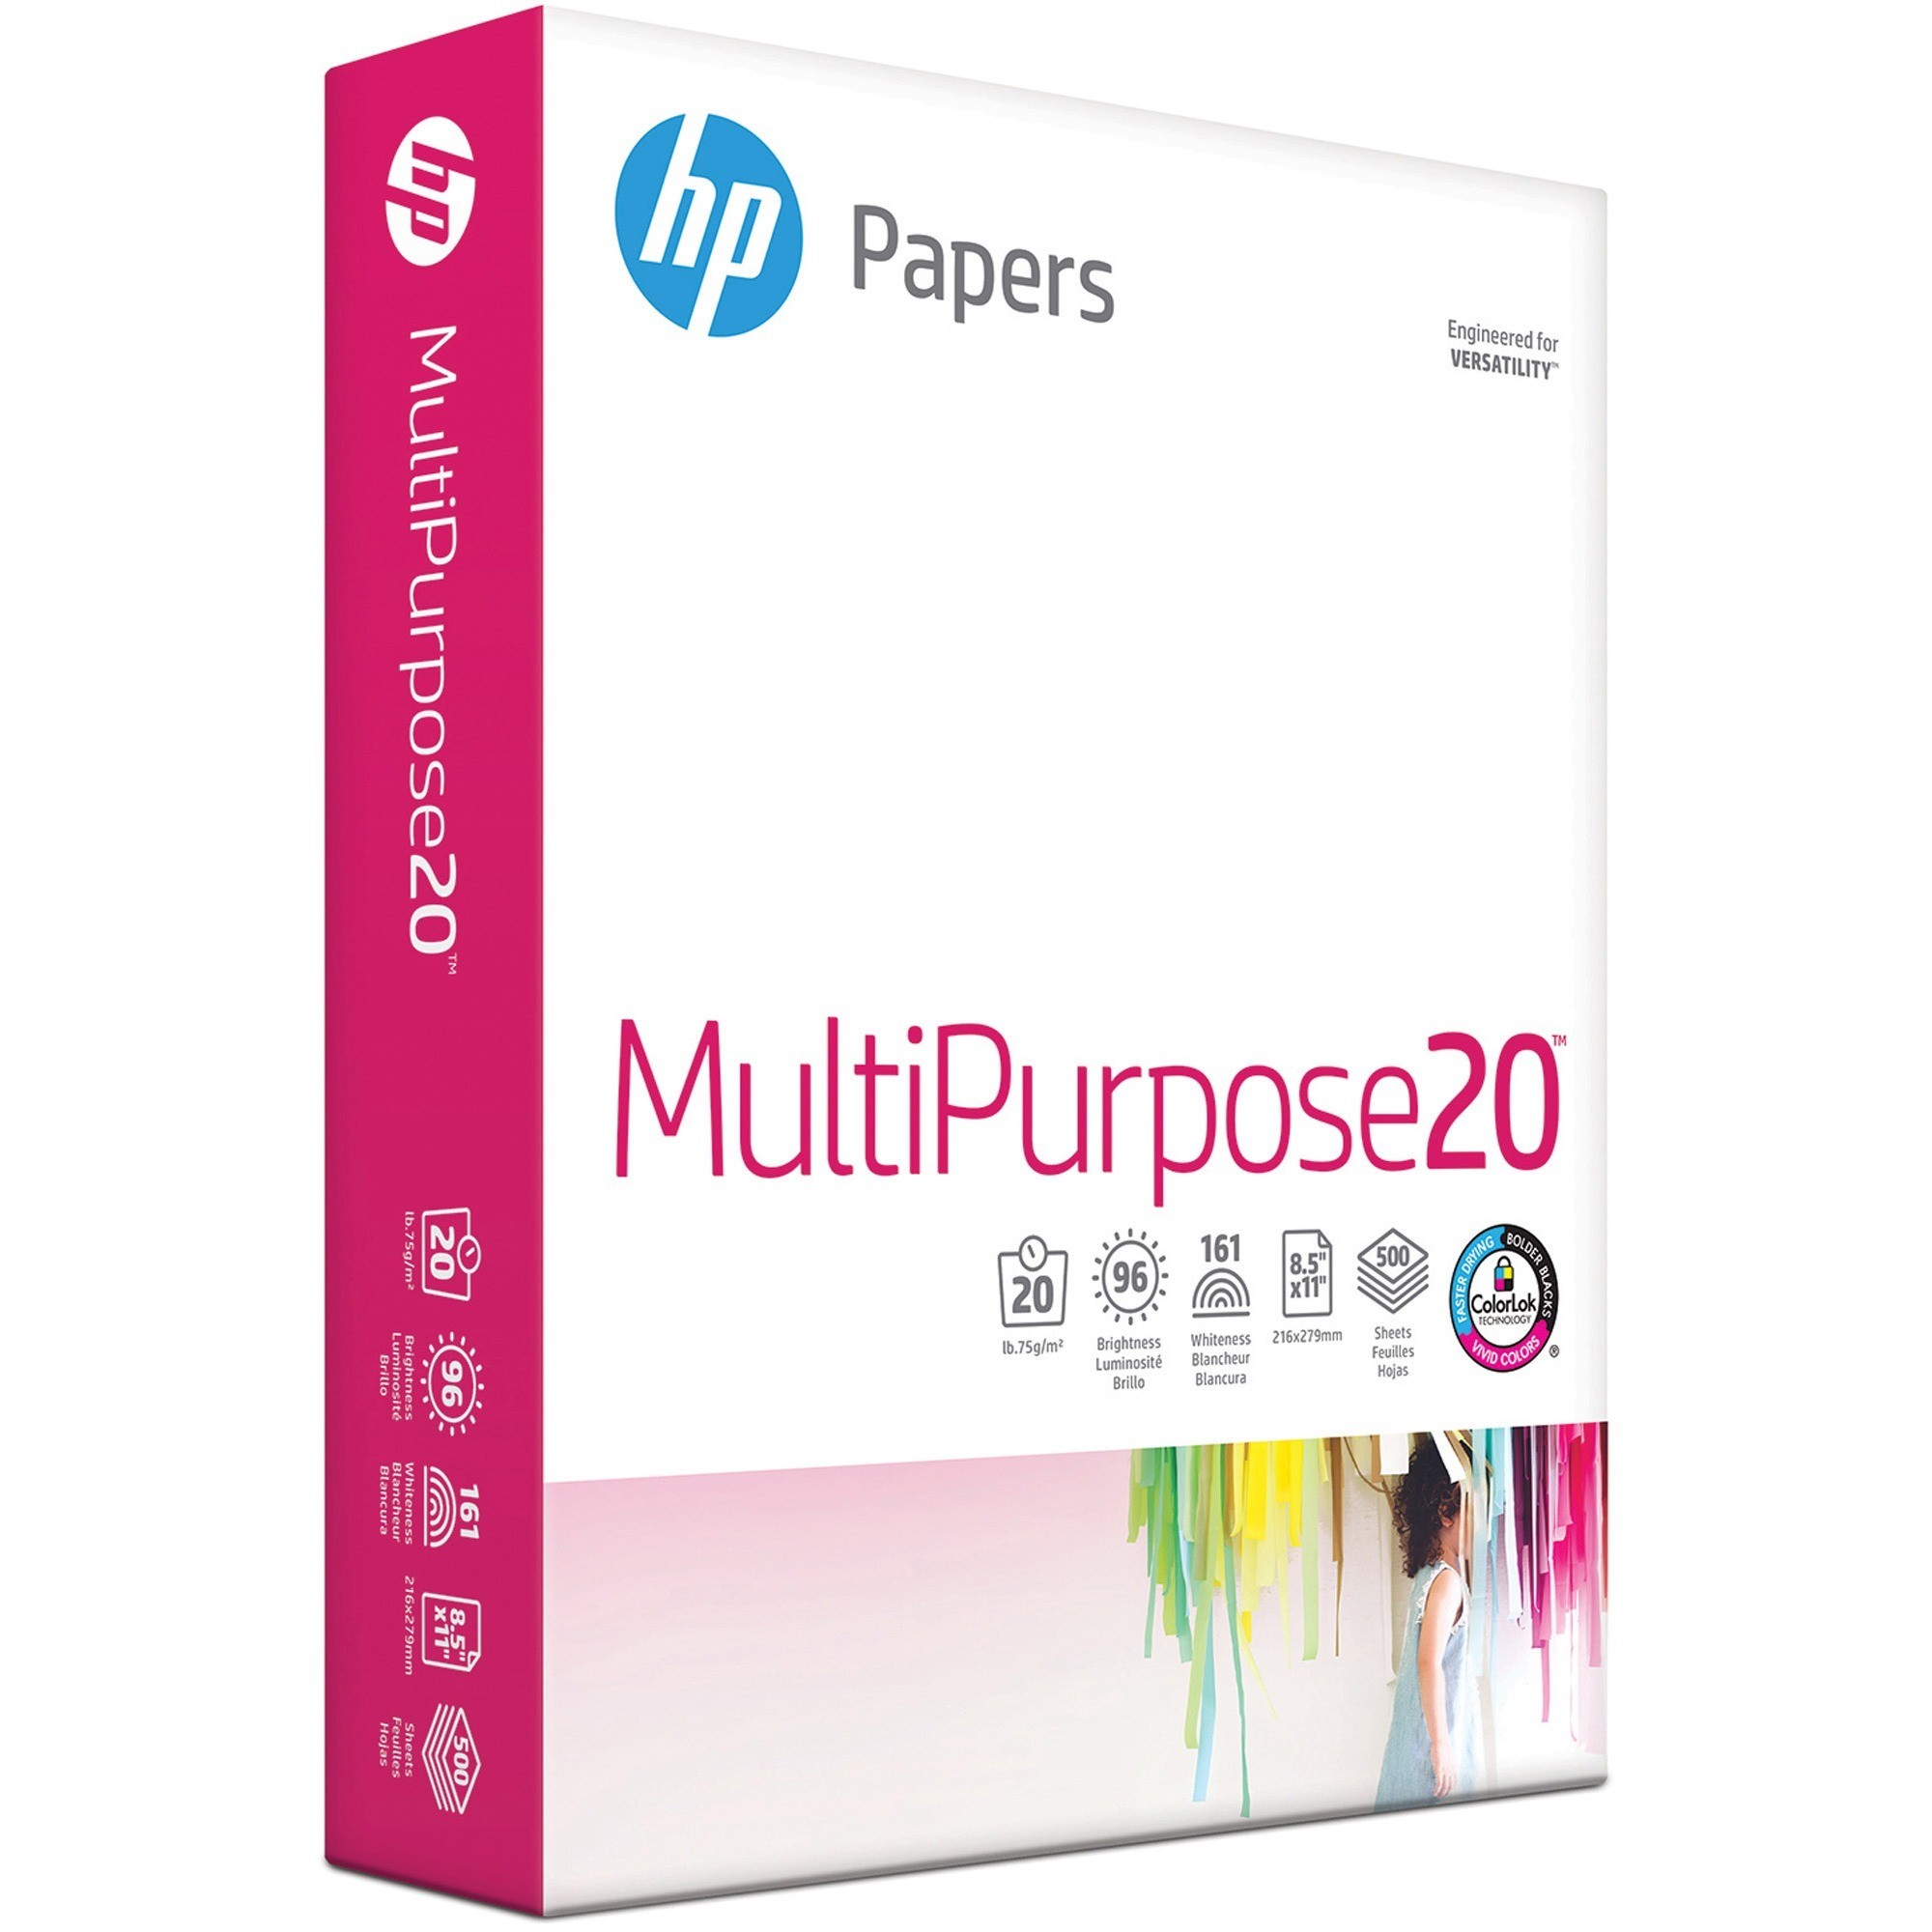 HP Printer Paper 8.5 x 11, 20 lb - 1 ream - 500 Sheets